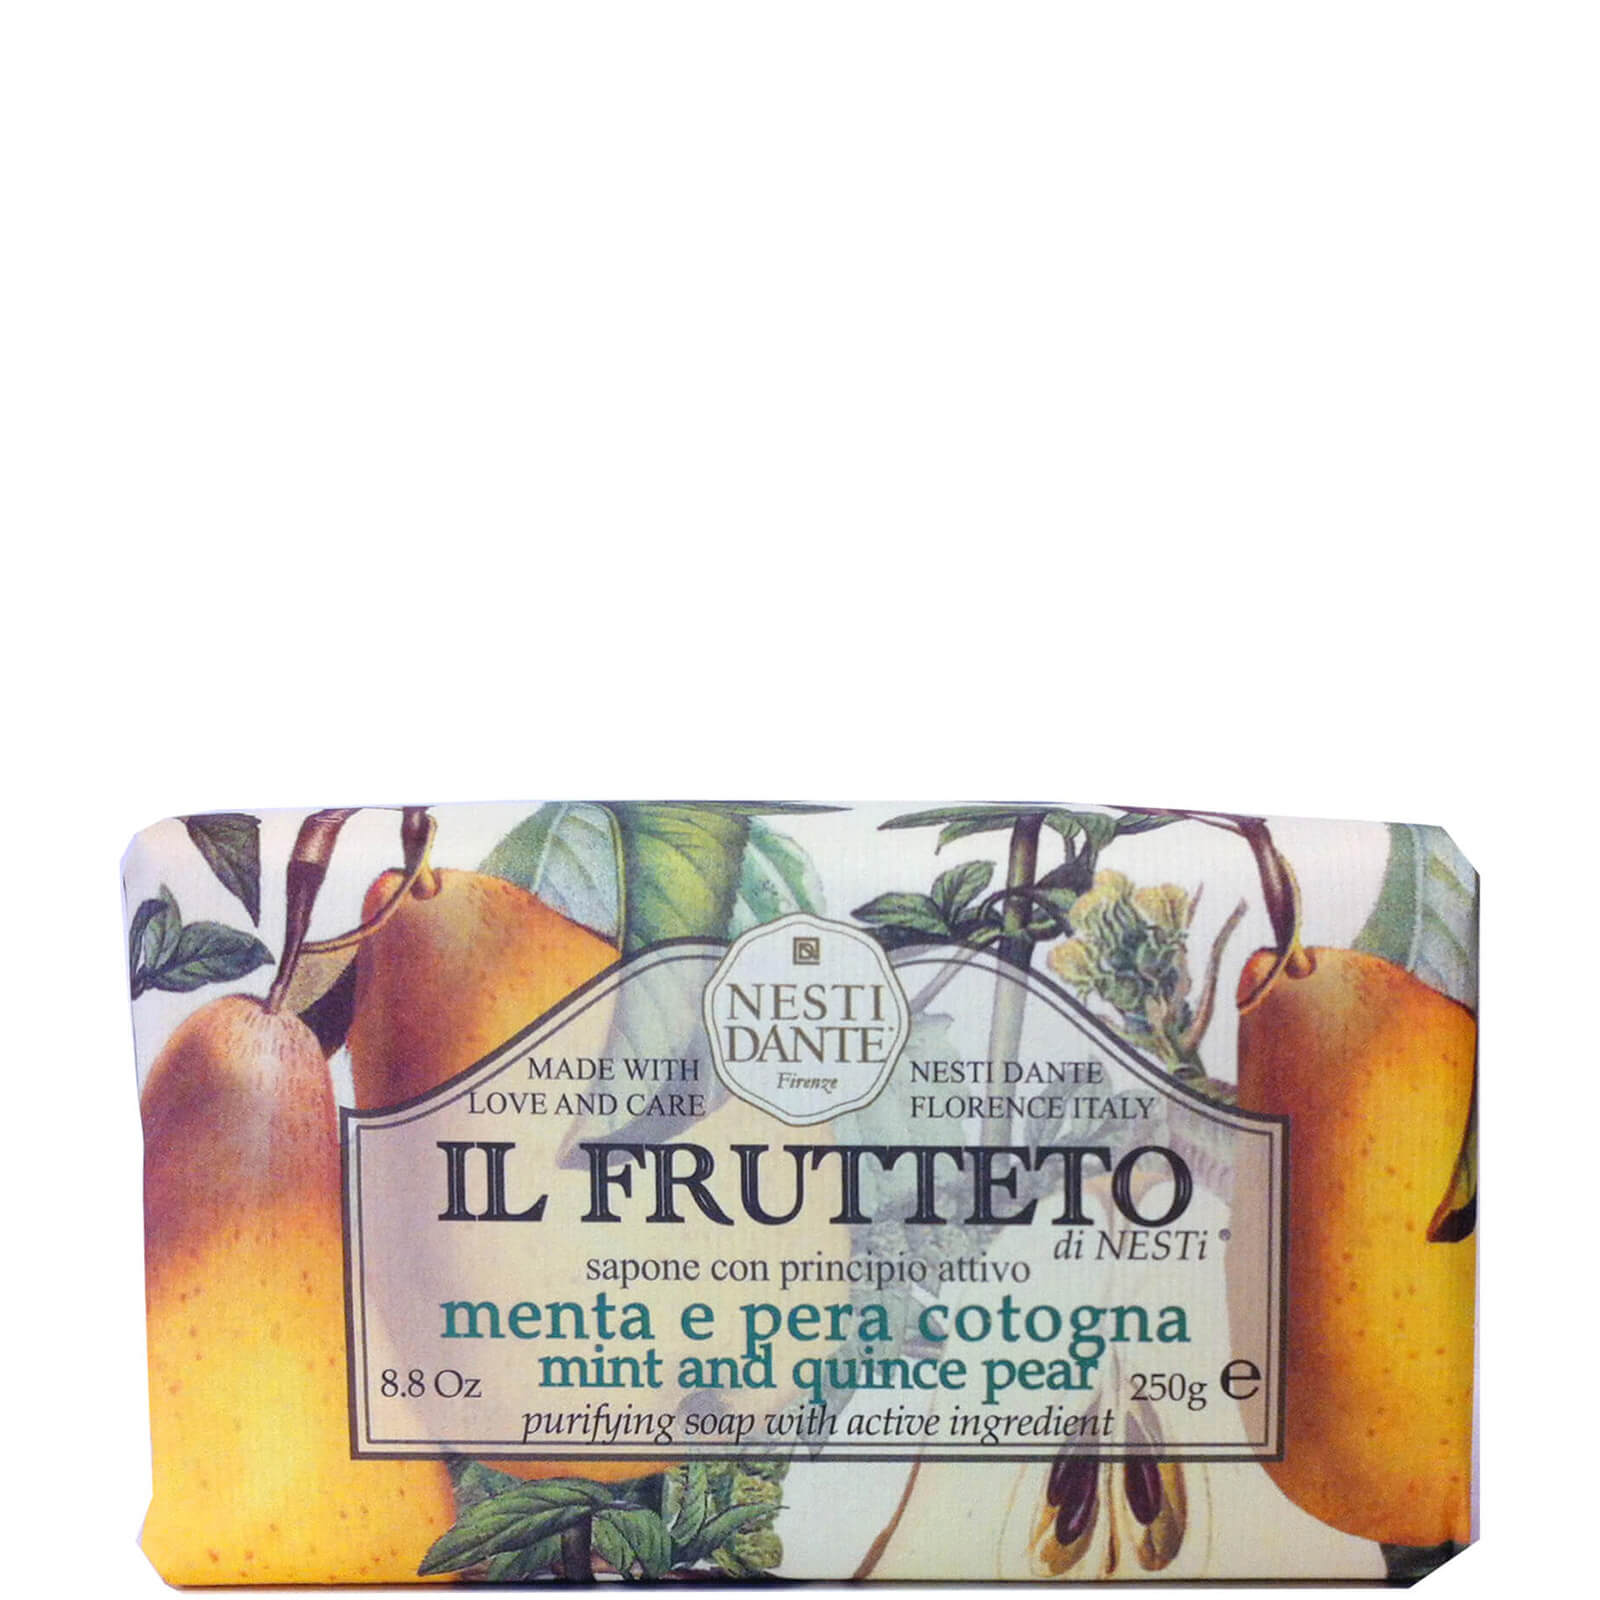 Nesti Dante Il Frutteto Mint and Quince Pear Soap 250 g